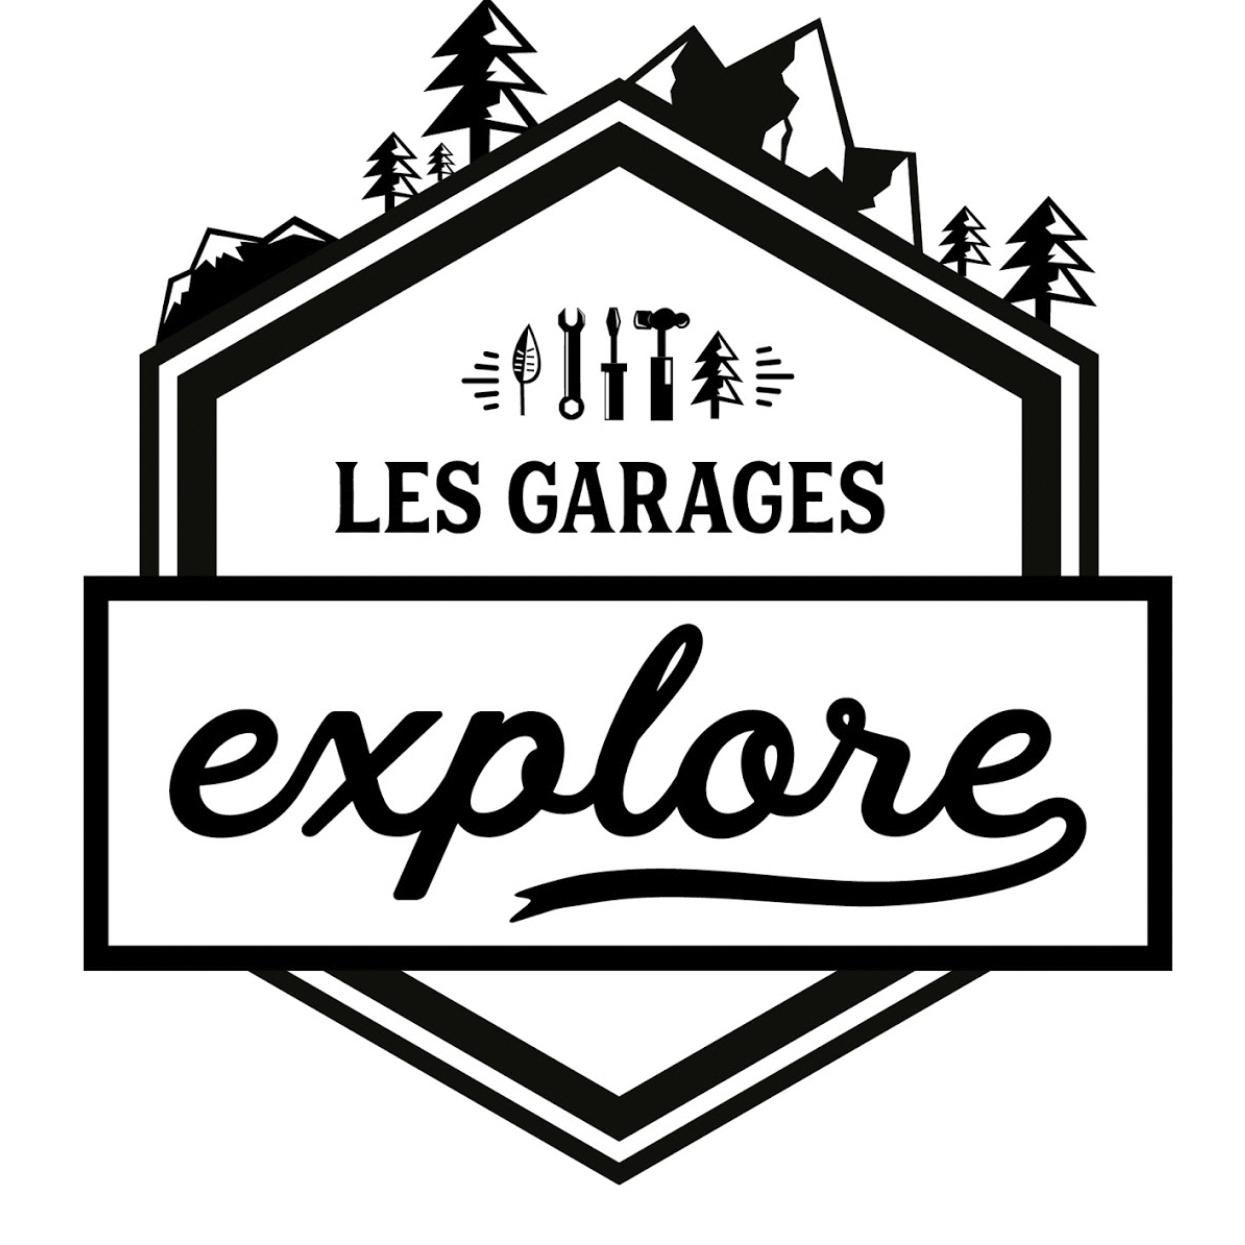 Les Garages Explore